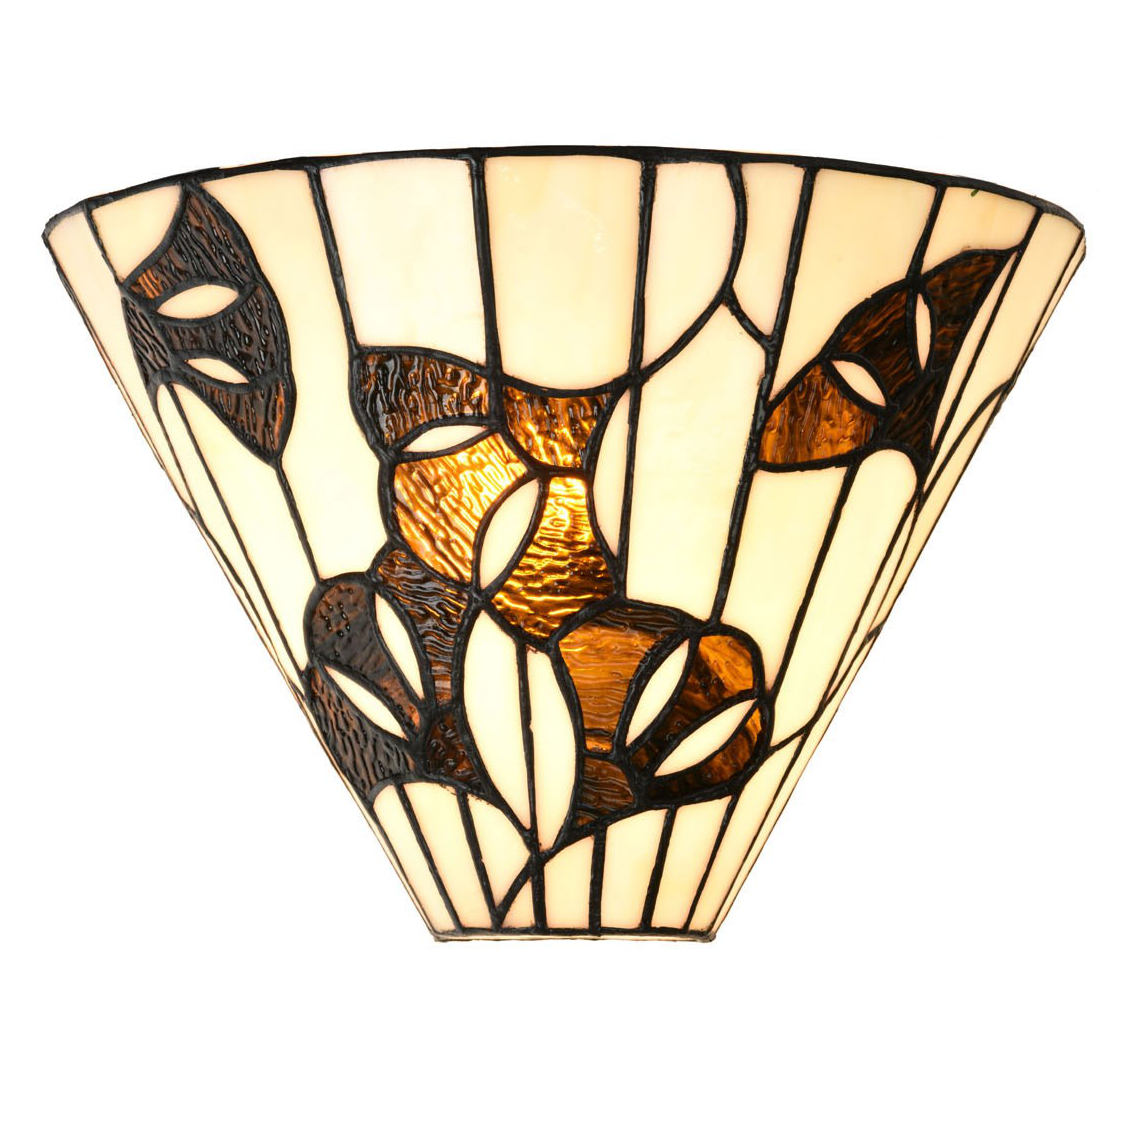 Halbrunde Wandleuchte mit Gingkoblättern aus Tiffany-Glas: Halbrunde Wandleuchte mit Gingkoblättern aus Tiffany-Glas (eingeschaltet)